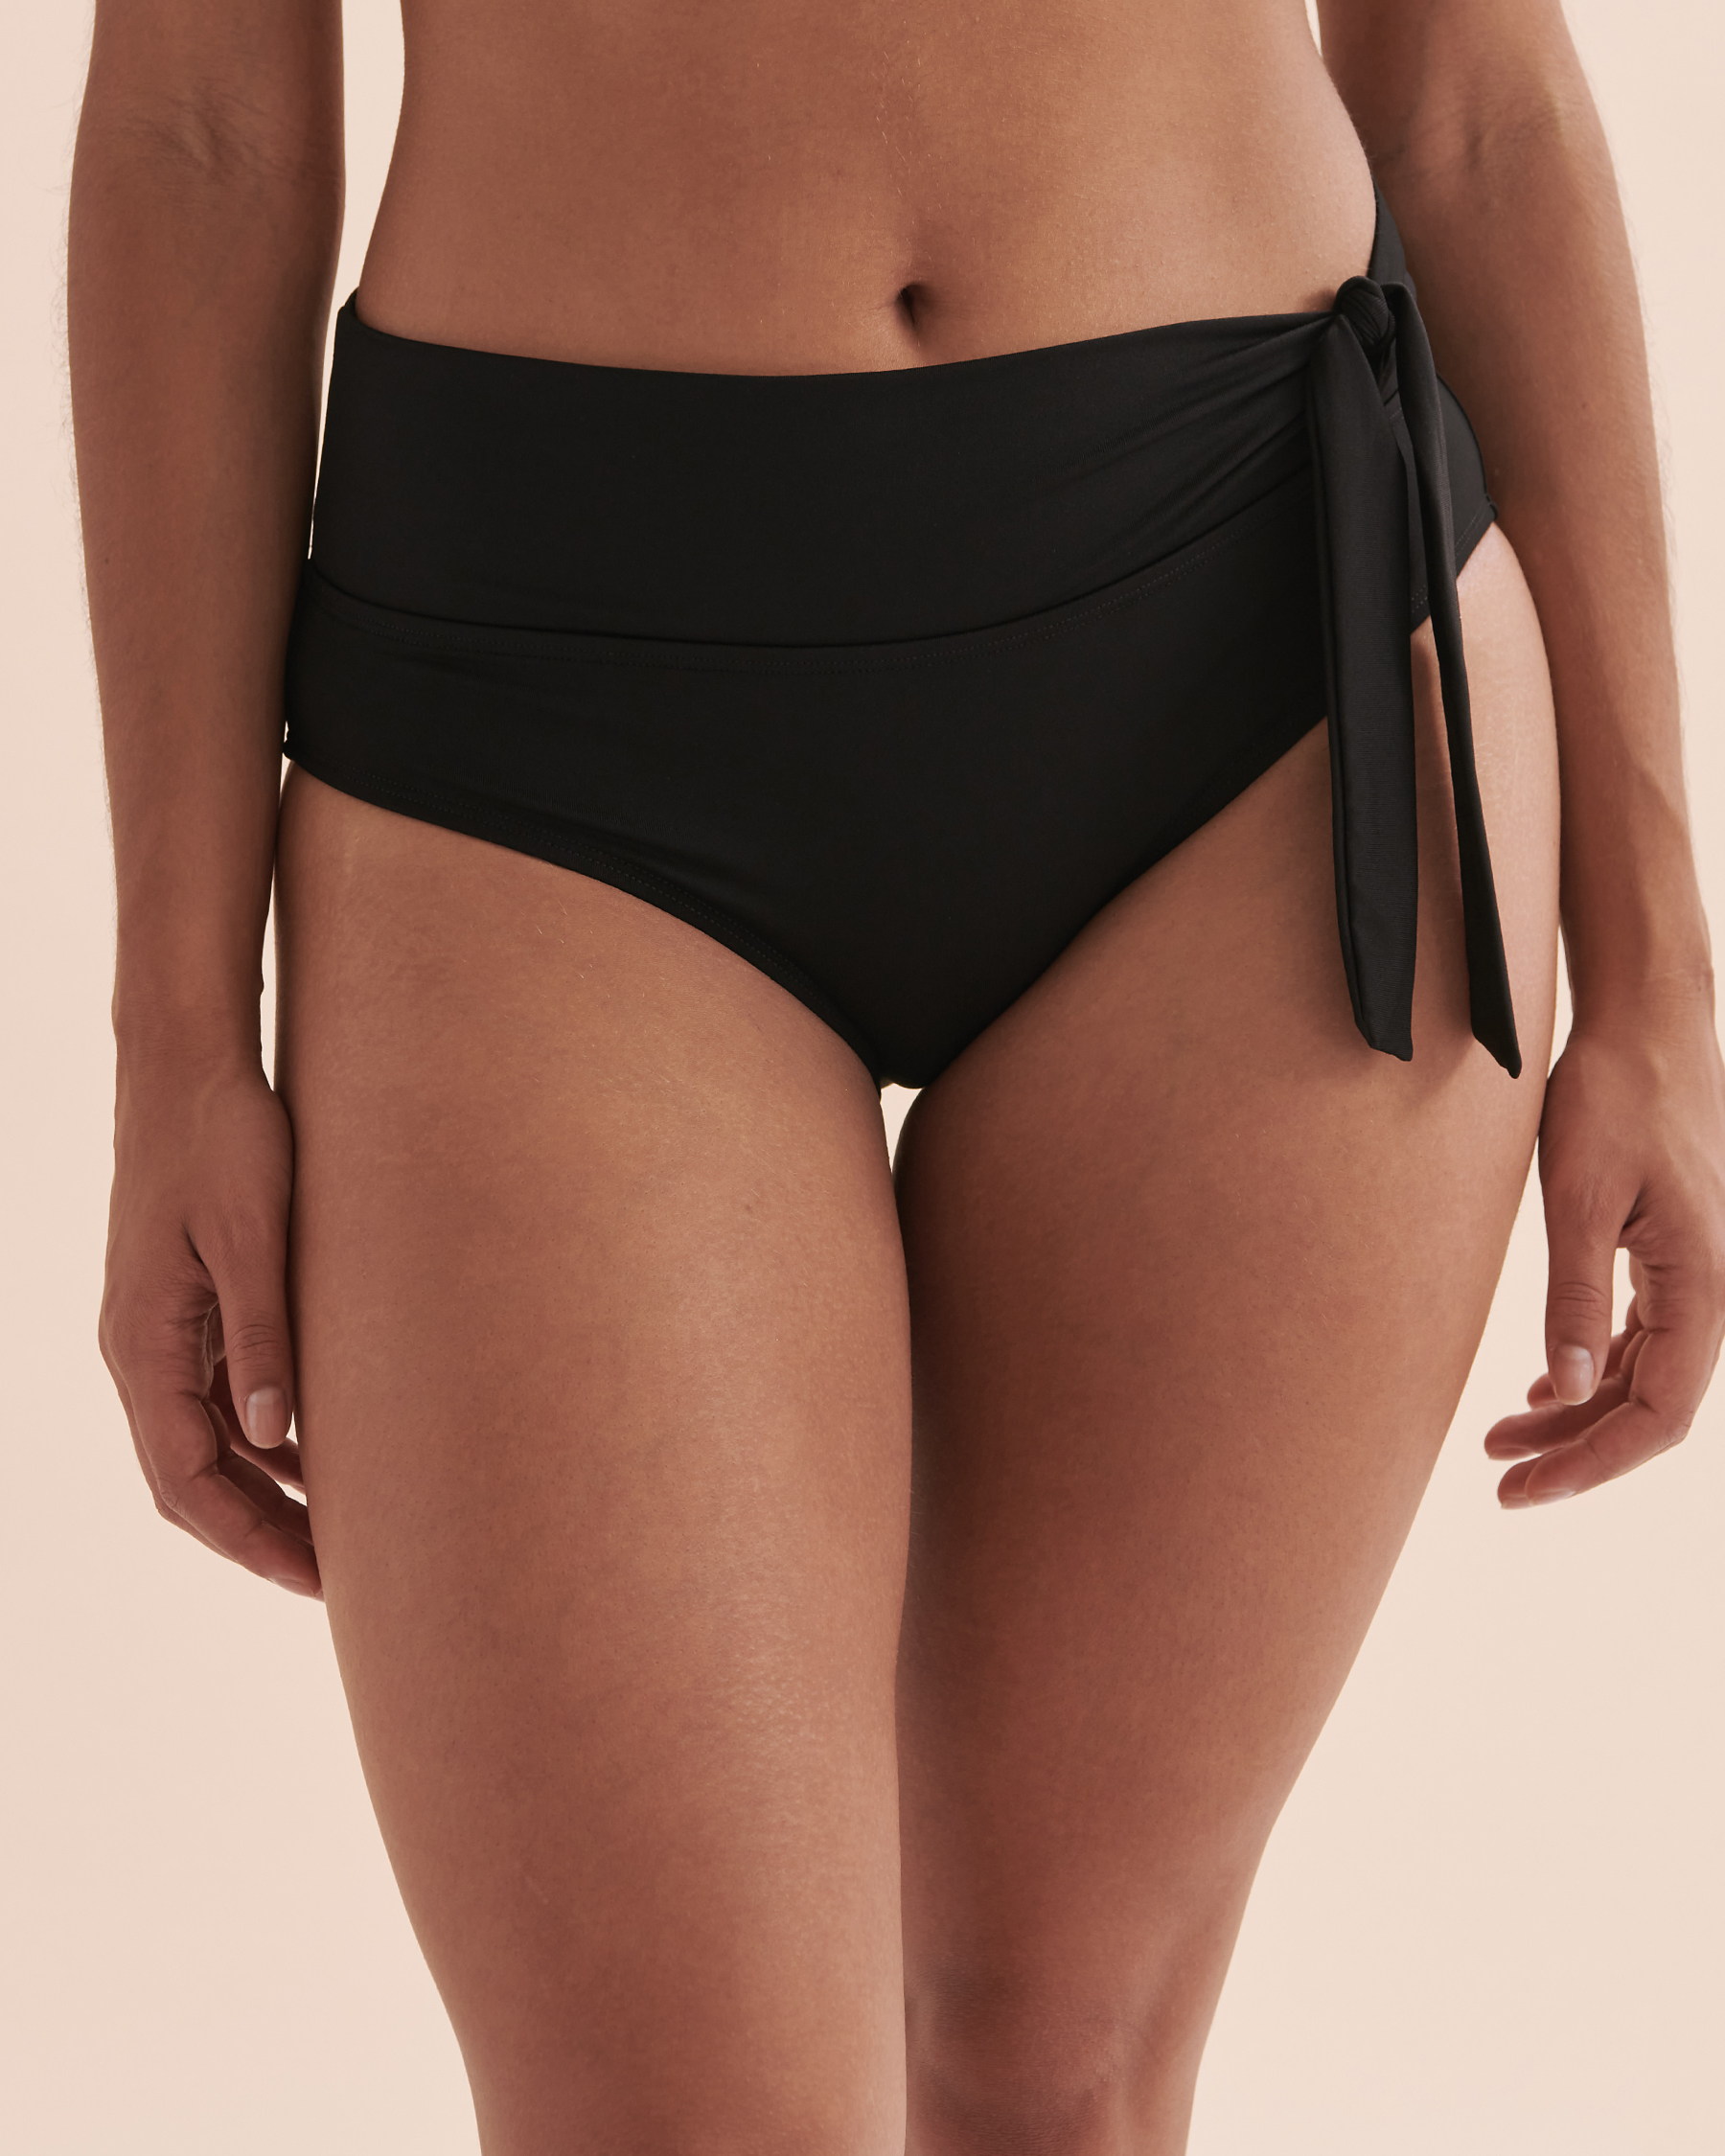 TURQUOISE COUTURE Bas de bikini bande de taille pliée Solid Noir 01300241 - Voir4